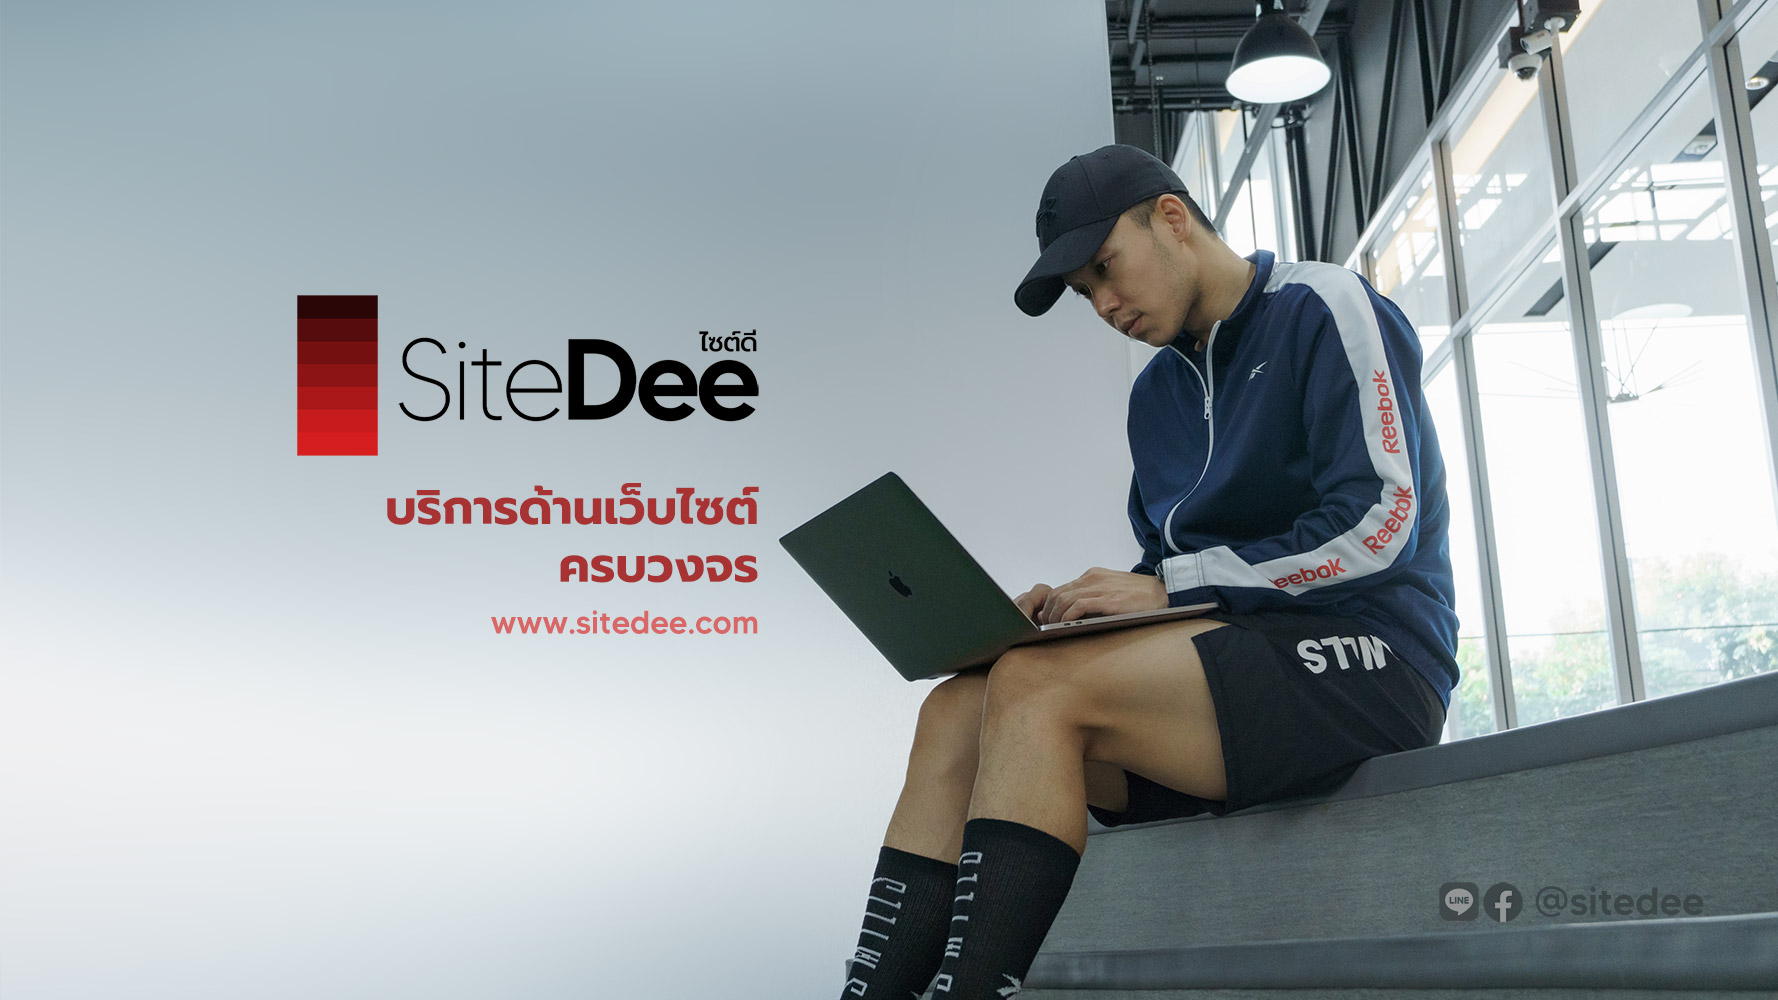 เว็บไซต์สำเร็จรูปเพื่อการขายของออนไลน์ ทำบล๊อก และเซลล์เพจที่ดีที่สุดในไทย